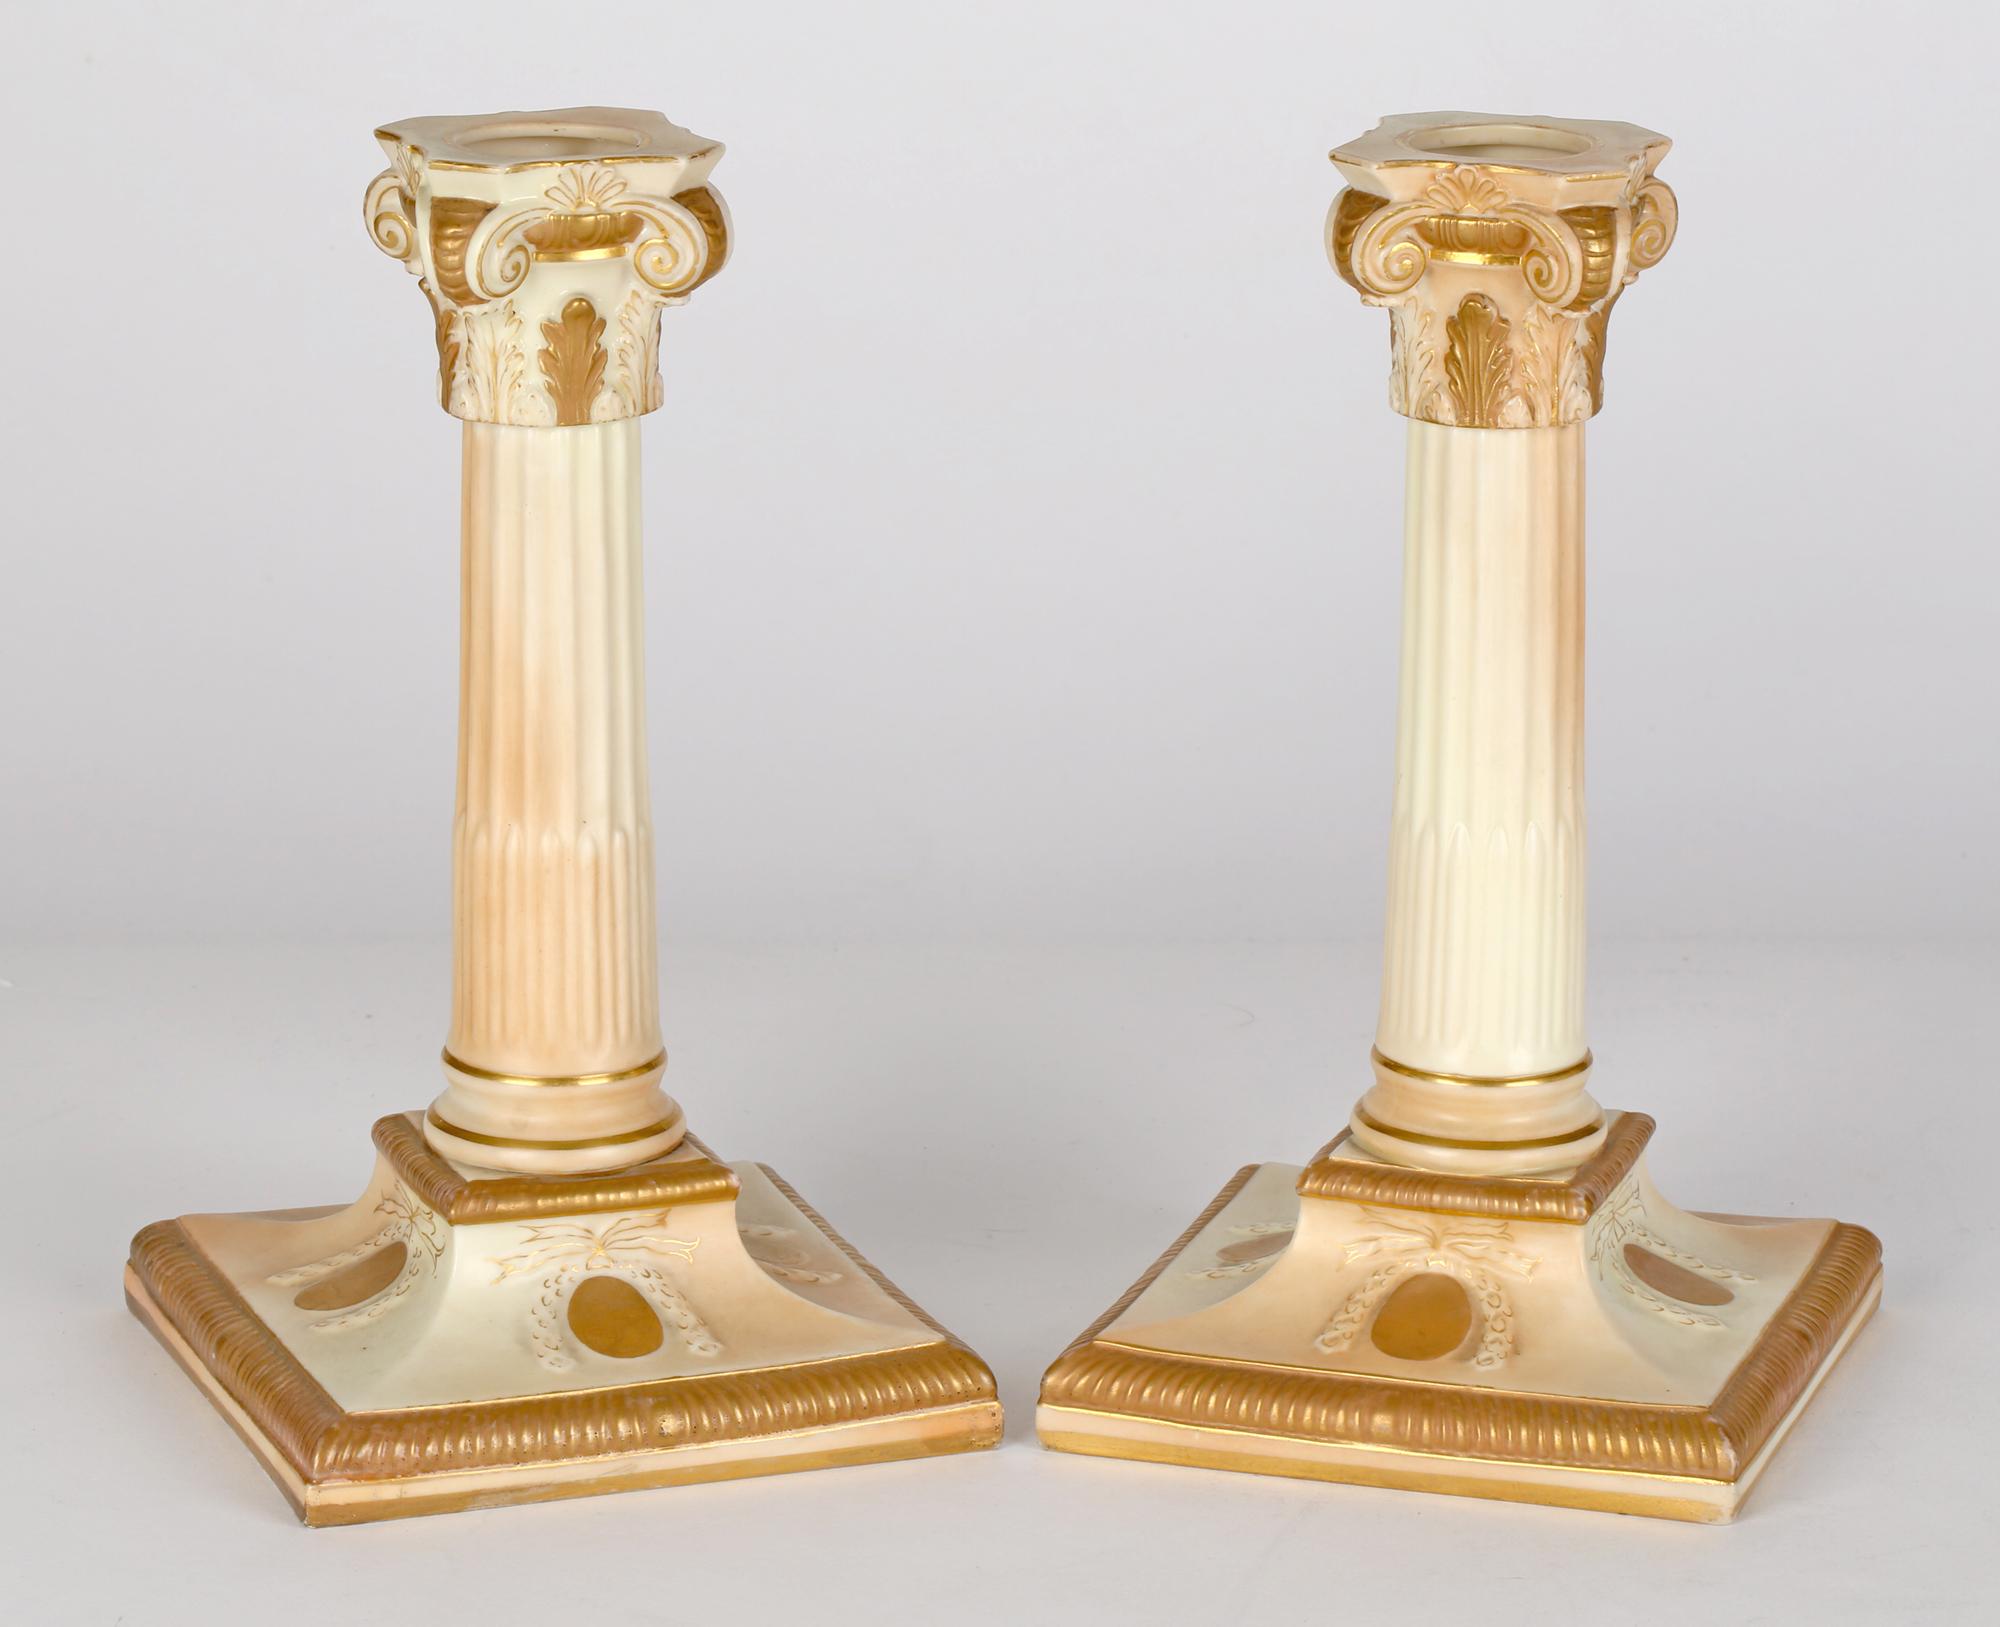 Ein sehr feines Paar antike Royal Worcester klassischen Porzellan Spalte Leuchter in blush Elfenbein Glasuren verziert, datiert 1892. Die Kerzenhalter stehen auf einem quadratischen Sockel mit geformten, abgerundeten, hohen Säulen mit verzierten,